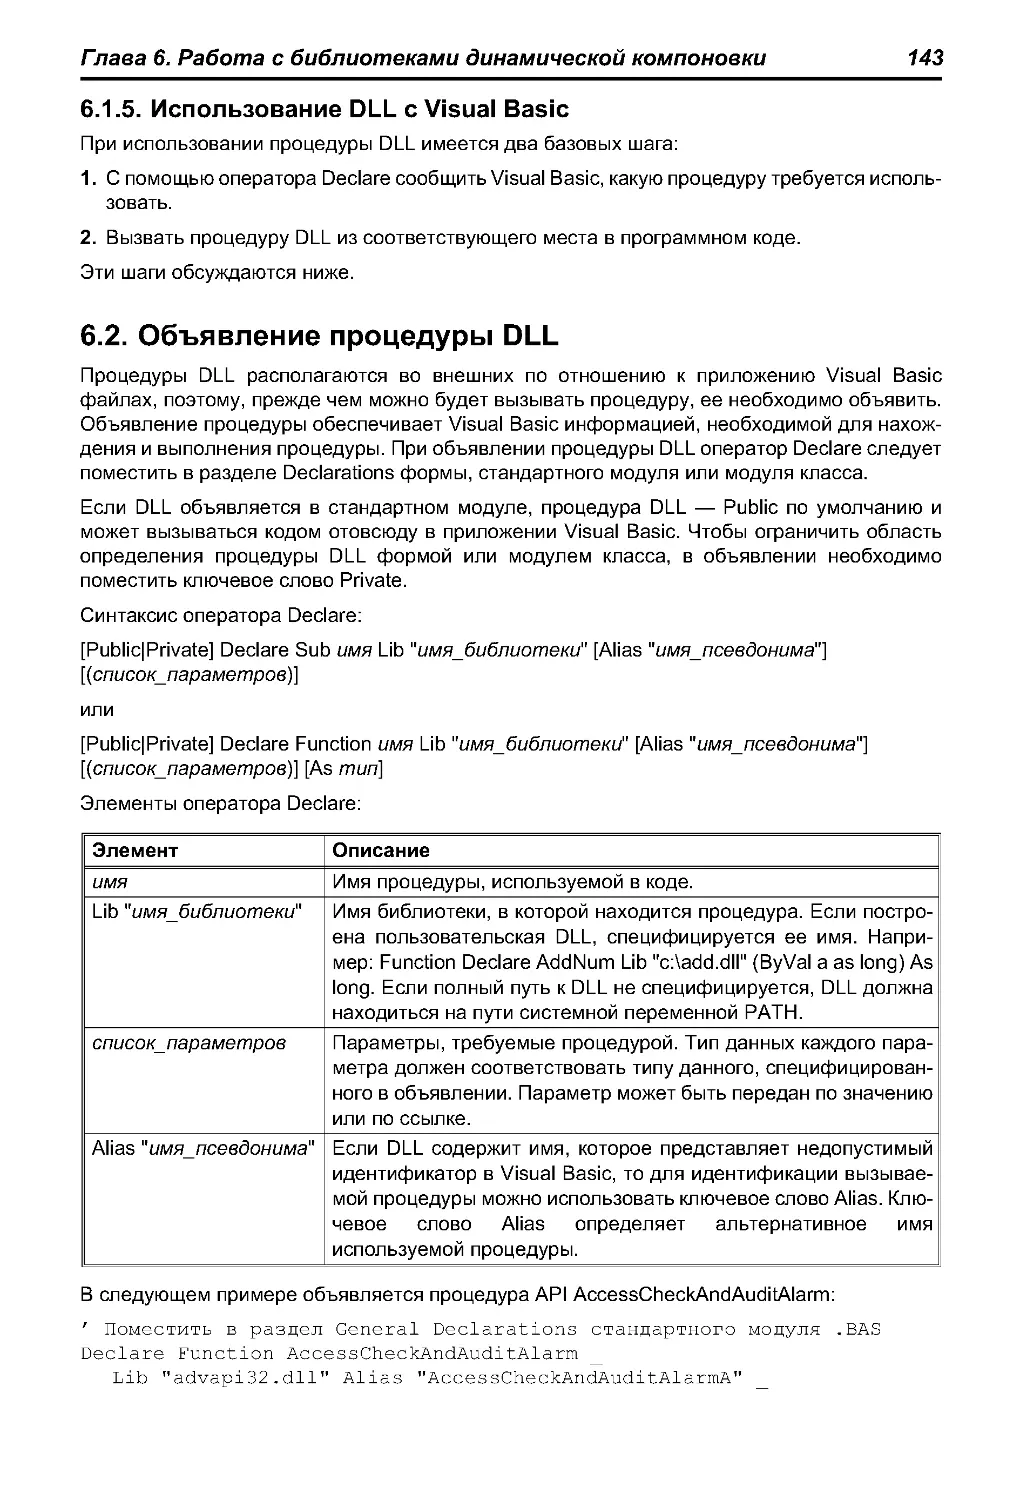 6.1.5. Использование DLL cVisual Basic
6.2. Объявление процедуры DLL